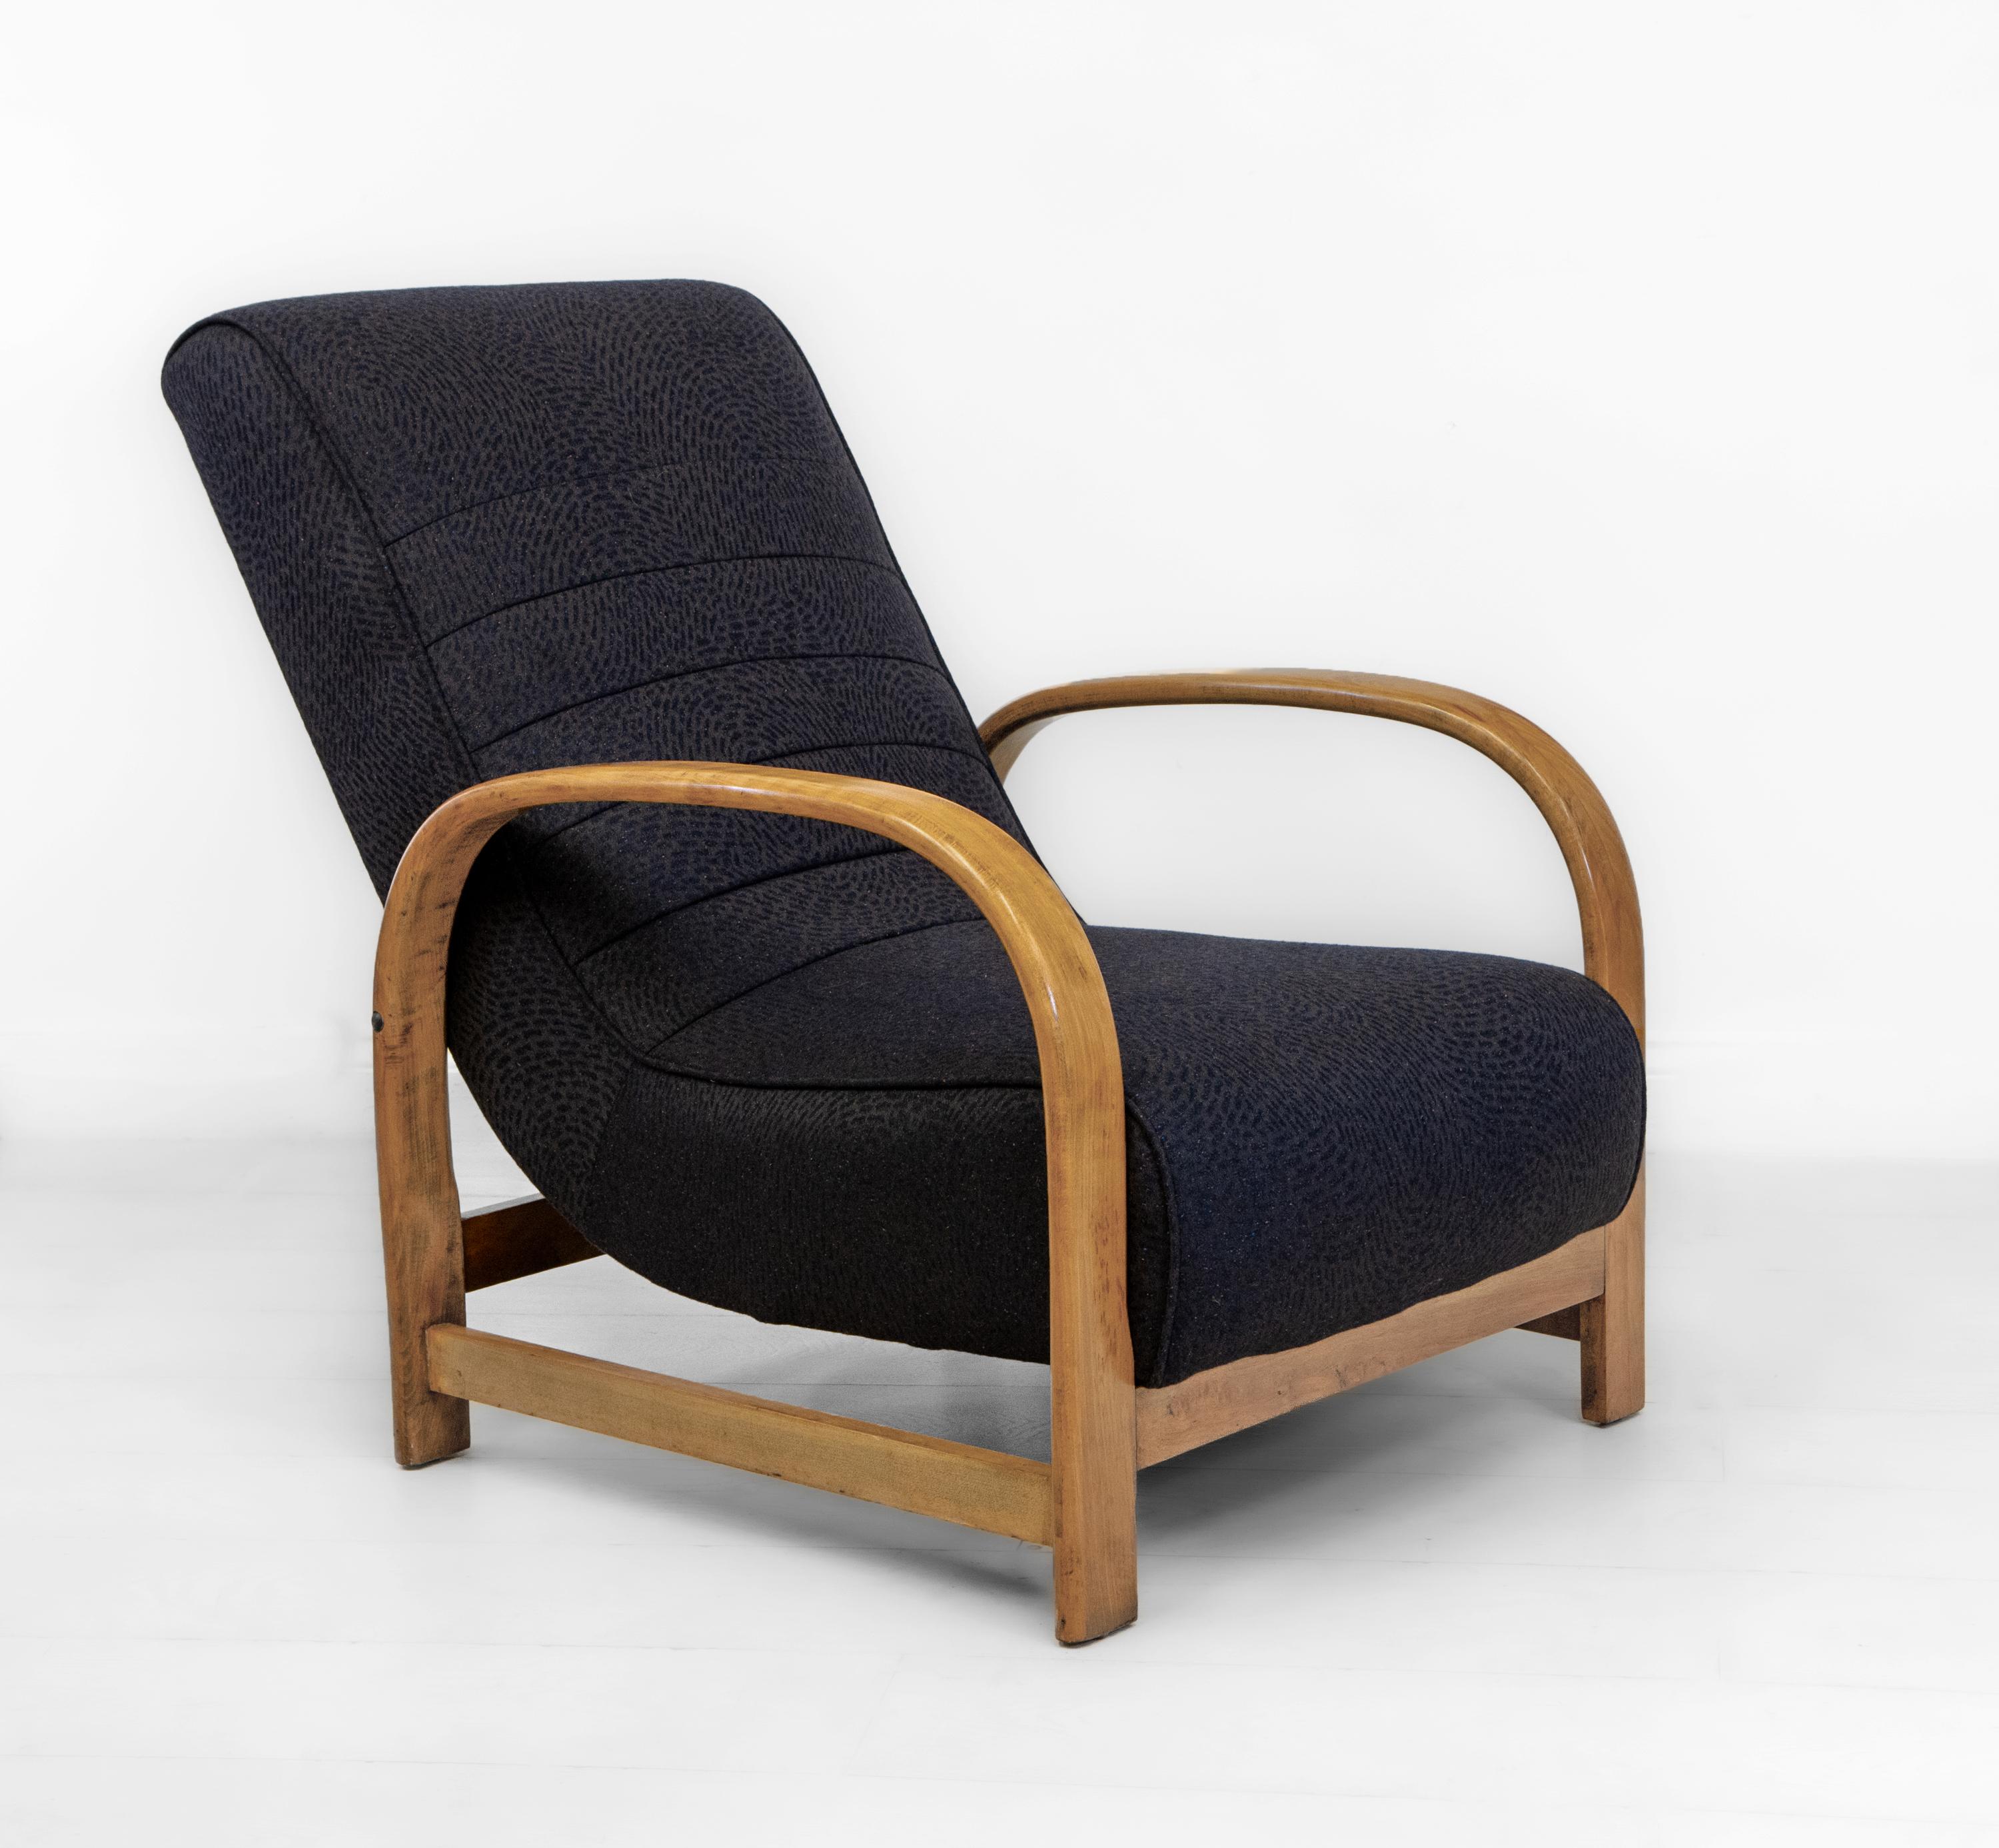 
Chaise de salon en hêtre courbé de style Art déco, avec tissu jacquard en laine mélangée de Beeche. Vers les années 1930.

Le cadre a été repeint à la gomme-laque et présente une finition lisse et cirée, d'une belle brillance. La chaise conserve